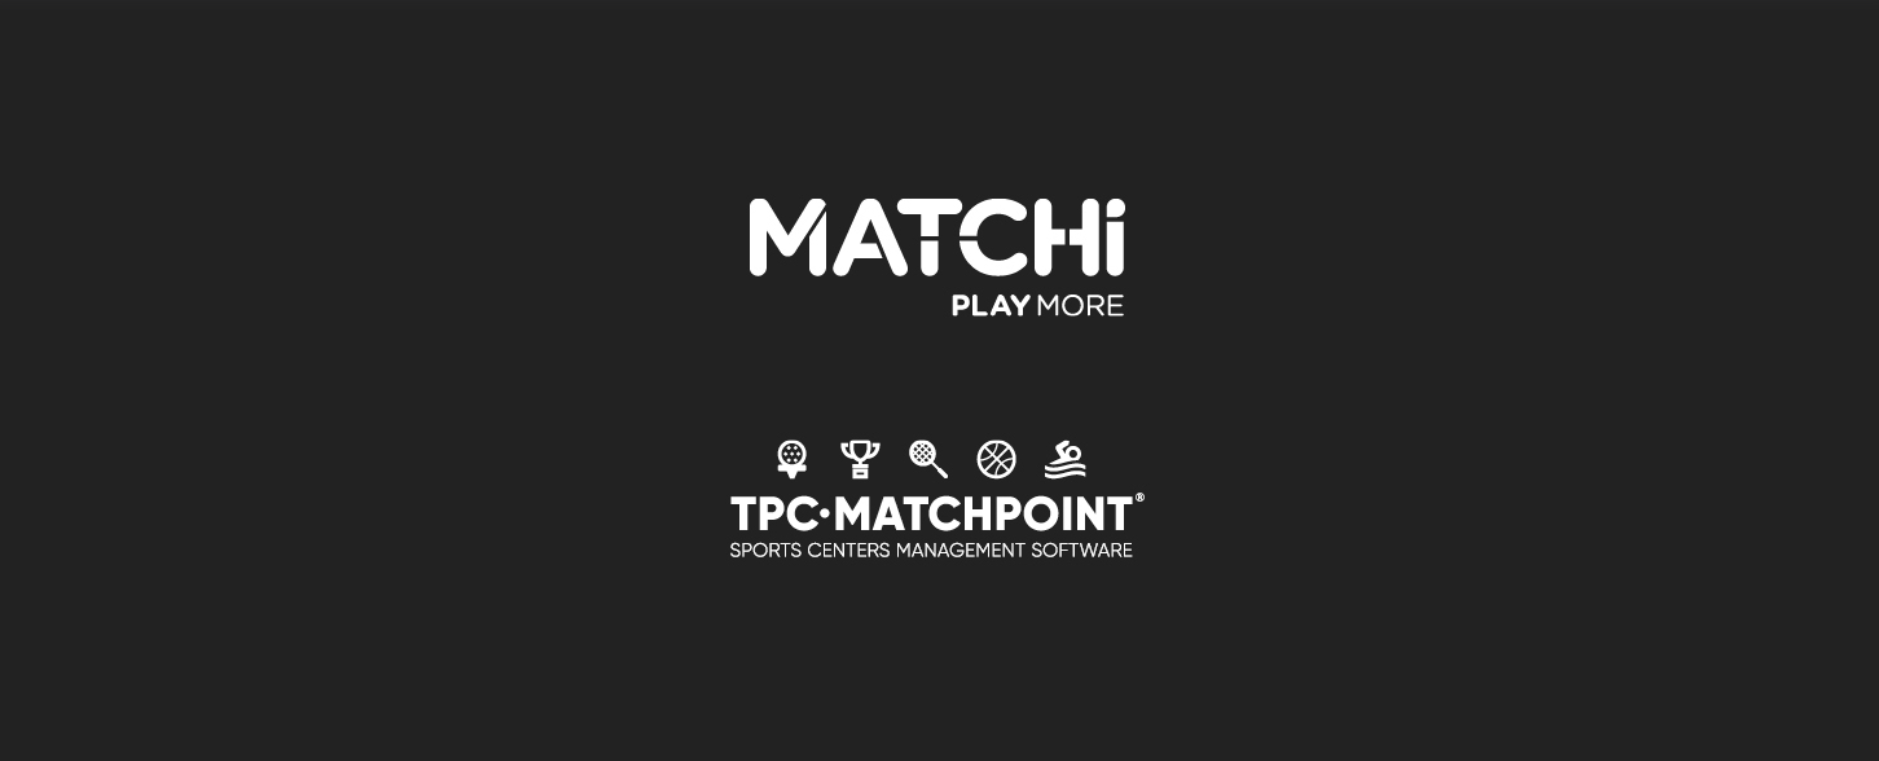 TPC Matchpoint arbeitet mit MATCHi zusammen und schafft eines der größten Racketsport-Netzwerke der Welt!